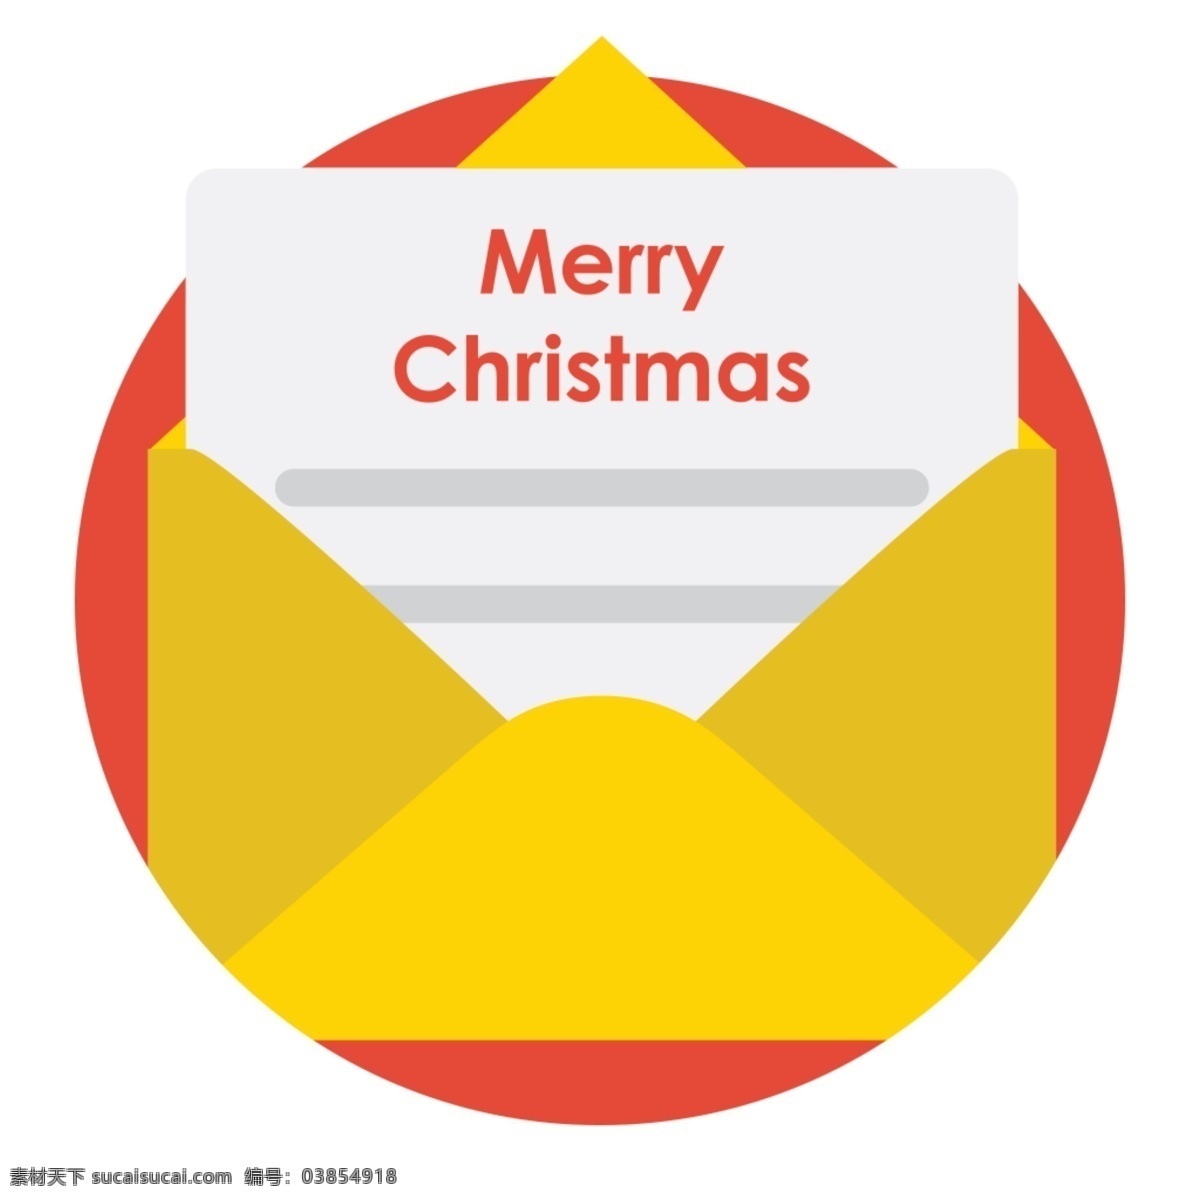 网页 ui 圣诞节 邮箱 icon 图标 图标设计 icon设计 icon图标 网页图标 圣诞节图标 圣诞节素材 邮箱图标 邮件图标 邮件icon